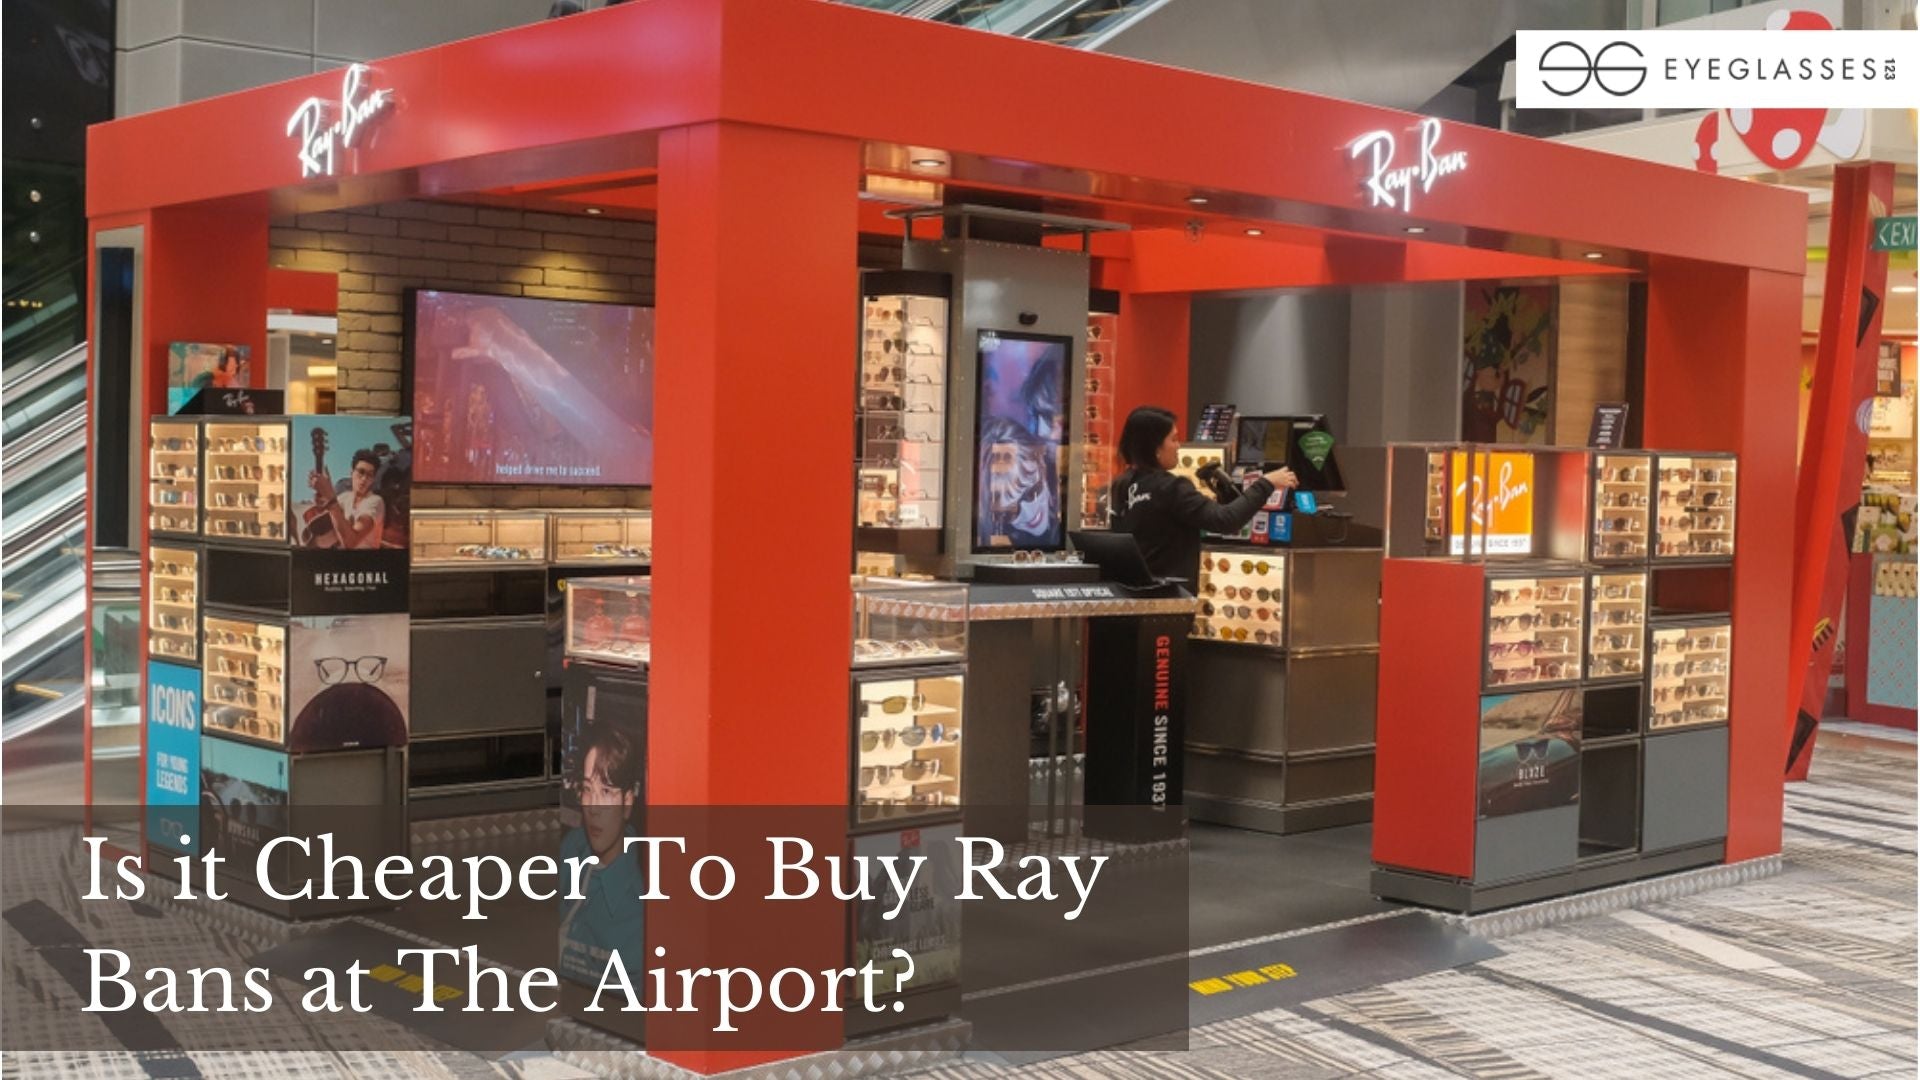 In de meeste gevallen beschermen medeklinker Is it Cheaper to Buy Ray Bans at the Airport?